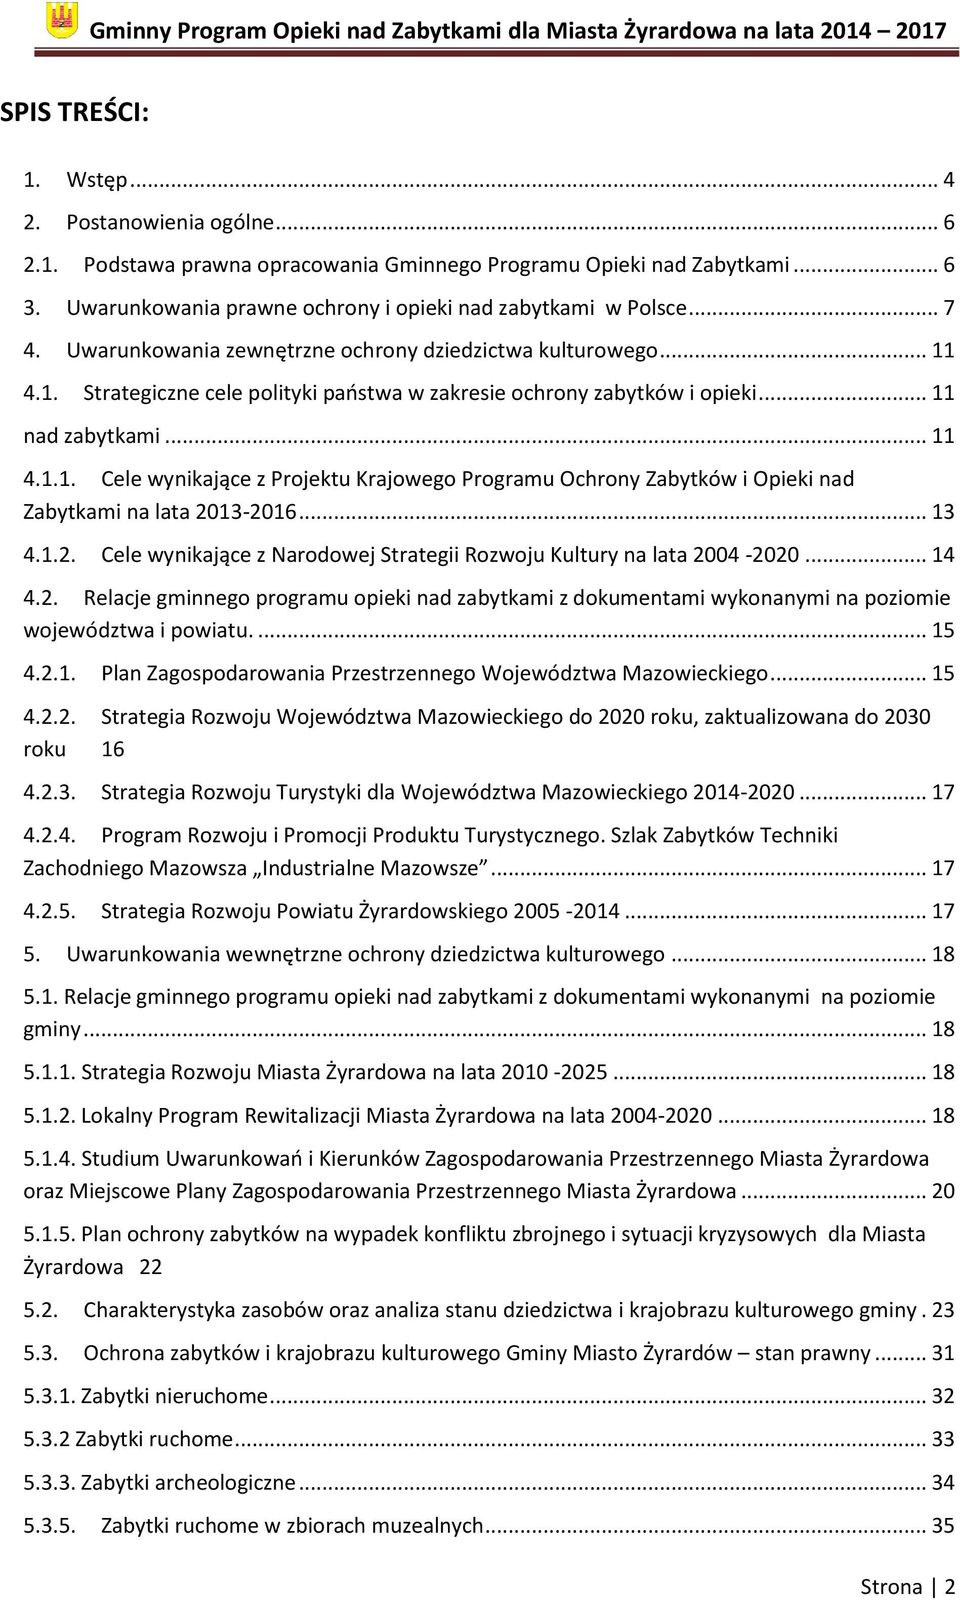 .. 13 4.1.2. Cele wynikające z Narodowej Strategii Rozwoju Kultury na lata 2004-2020... 14 4.2. Relacje gminnego programu opieki nad zabytkami z dokumentami wykonanymi na poziomie województwa i powiatu.